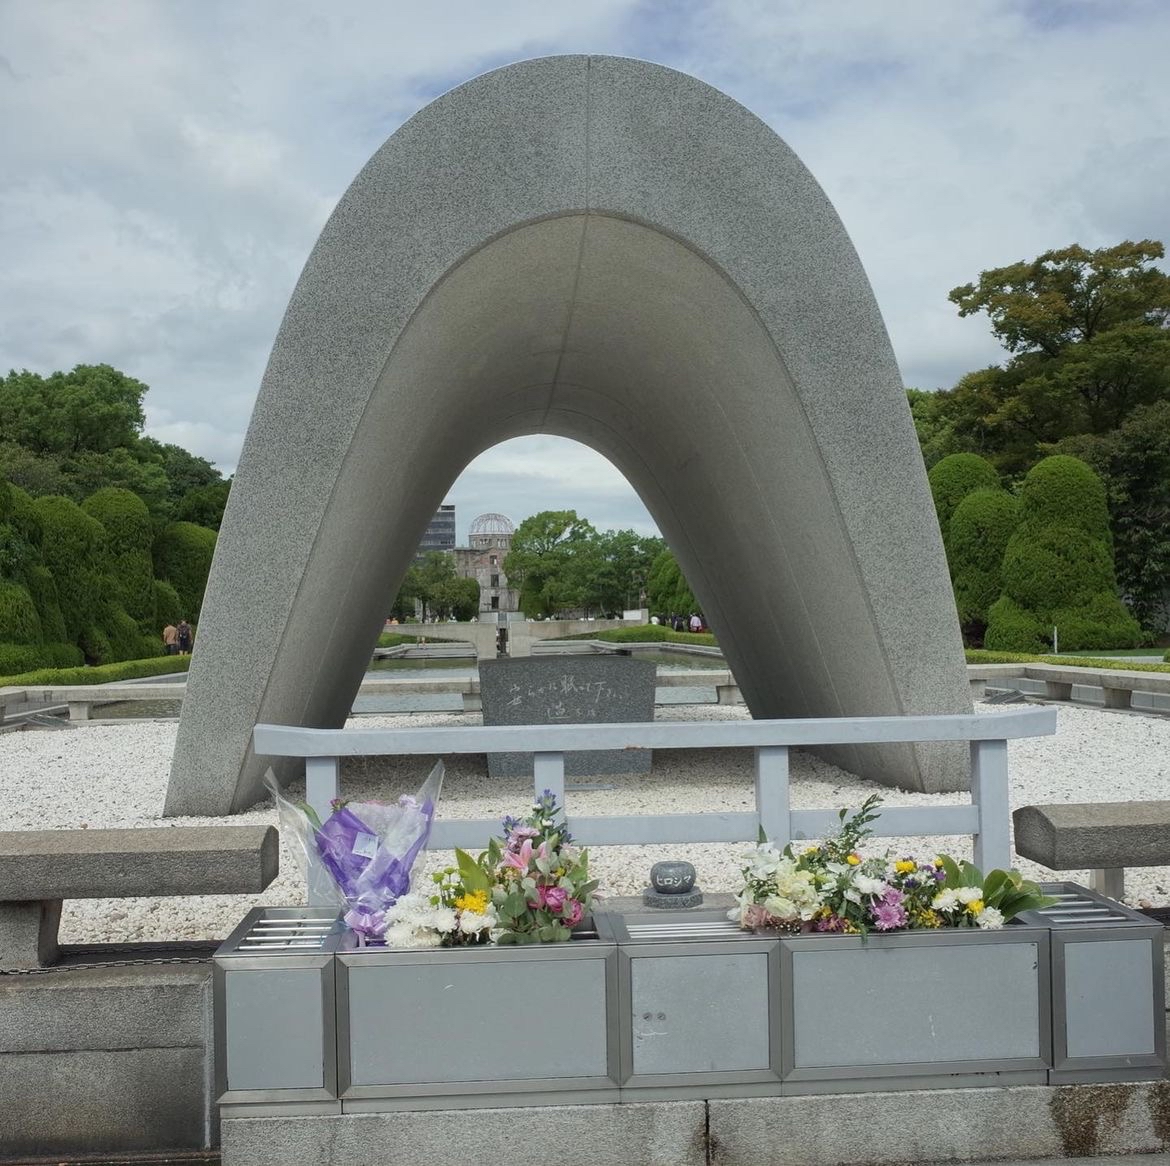 访问广岛，这个曾经历过二战末期惨烈原子弹轰炸的城市，是一次深刻的历史与和平教育之旅。广岛如今已经变成